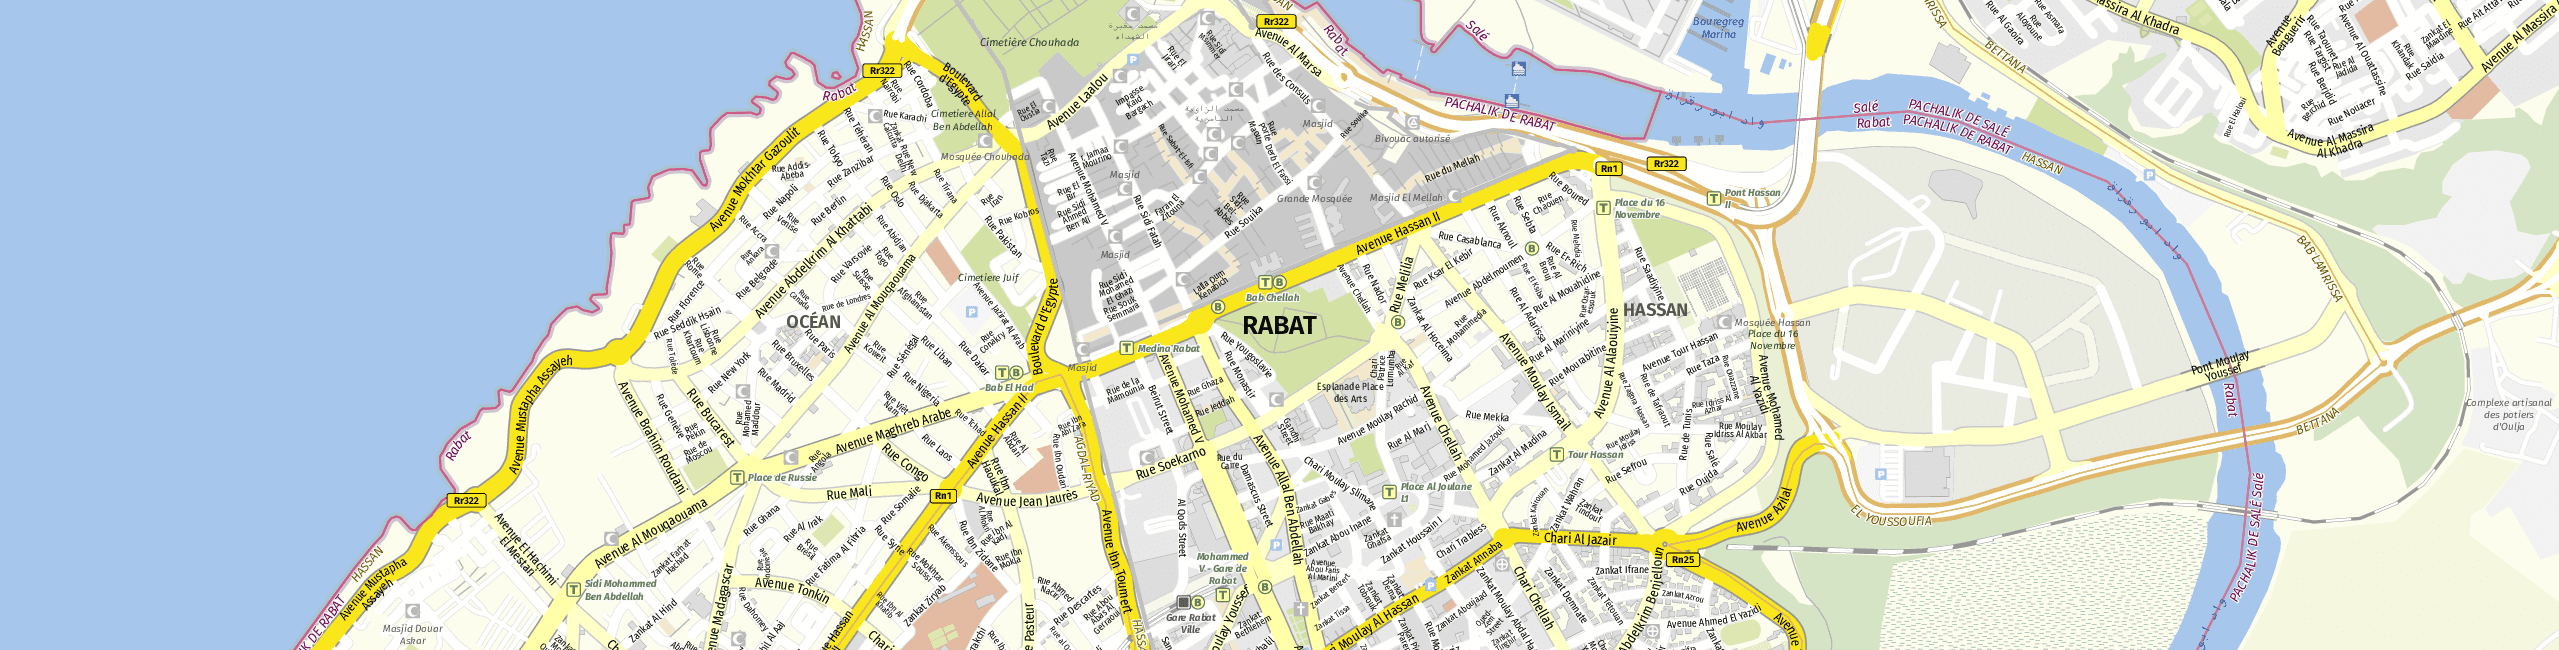 Stadtplan Rabat zum Downloaden.